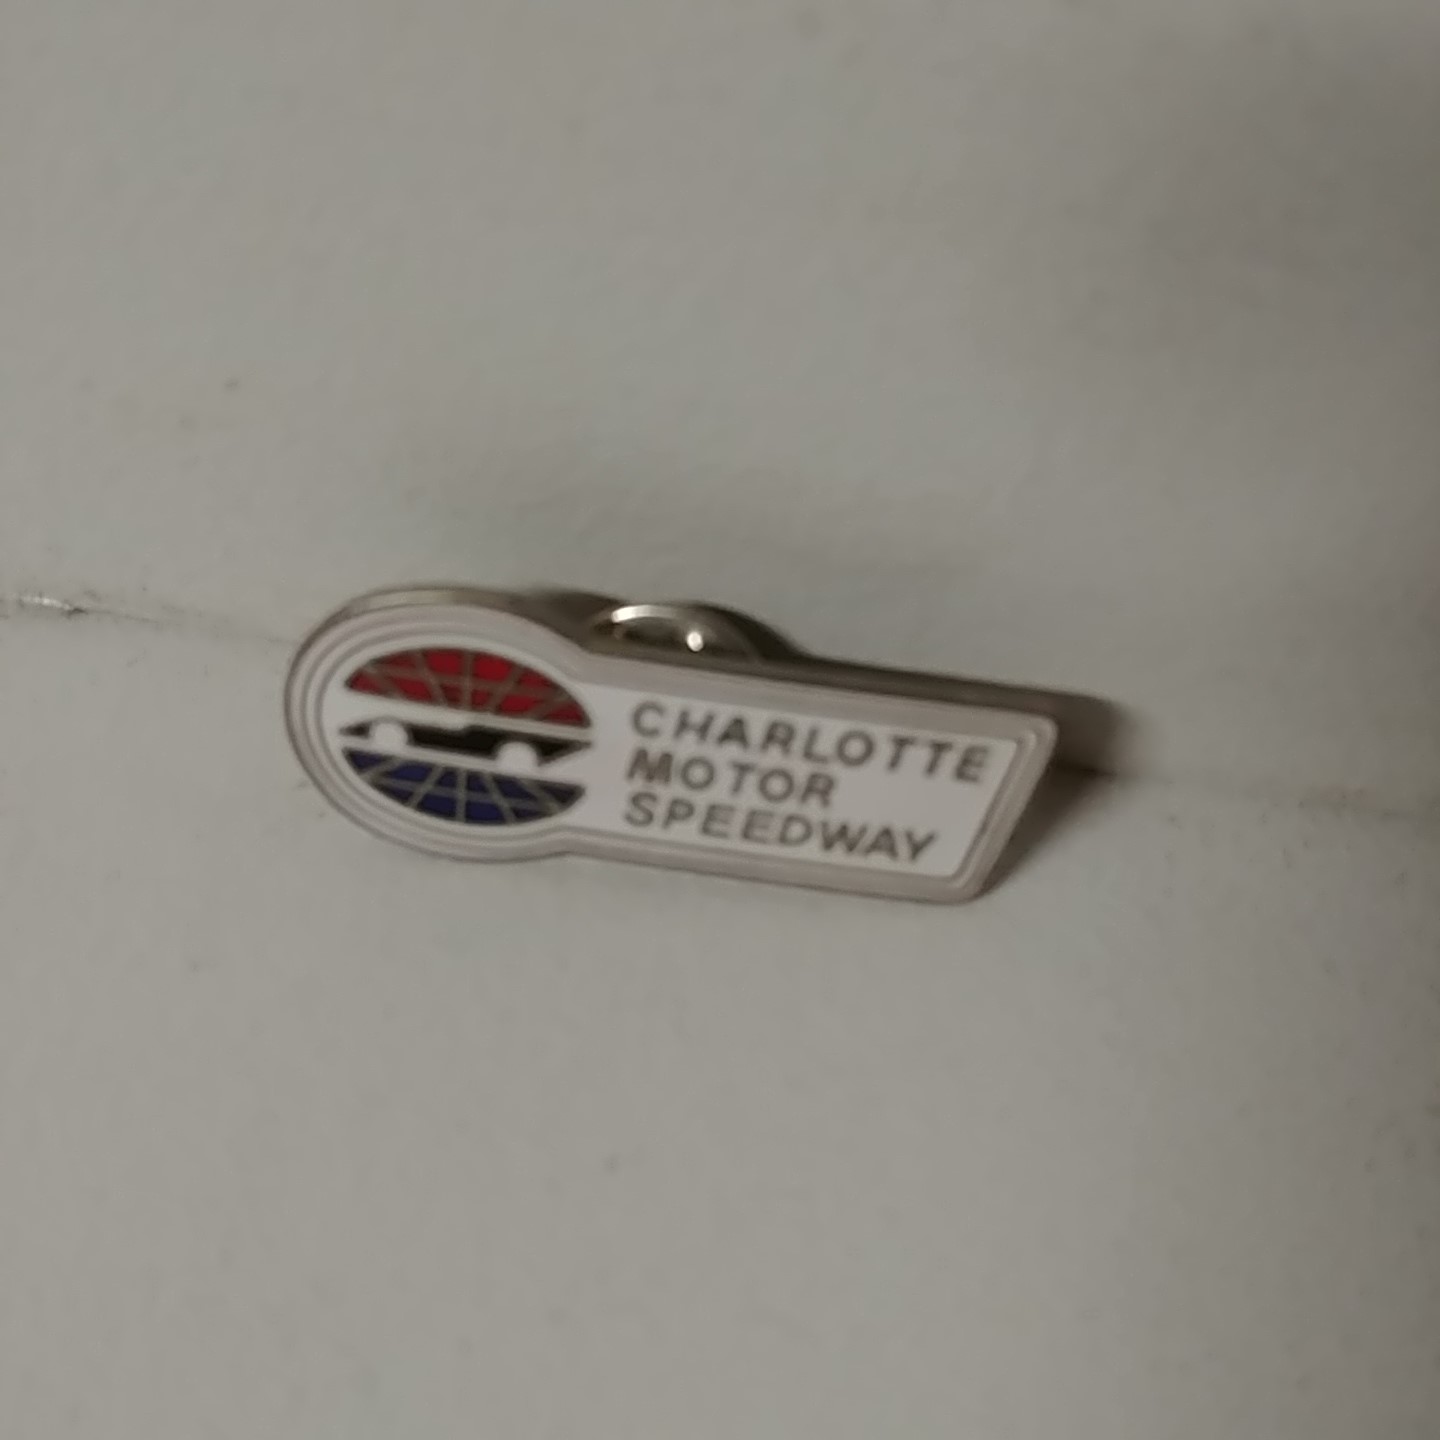 1990's Charlotte Motor Speedway "Undated" hatpin